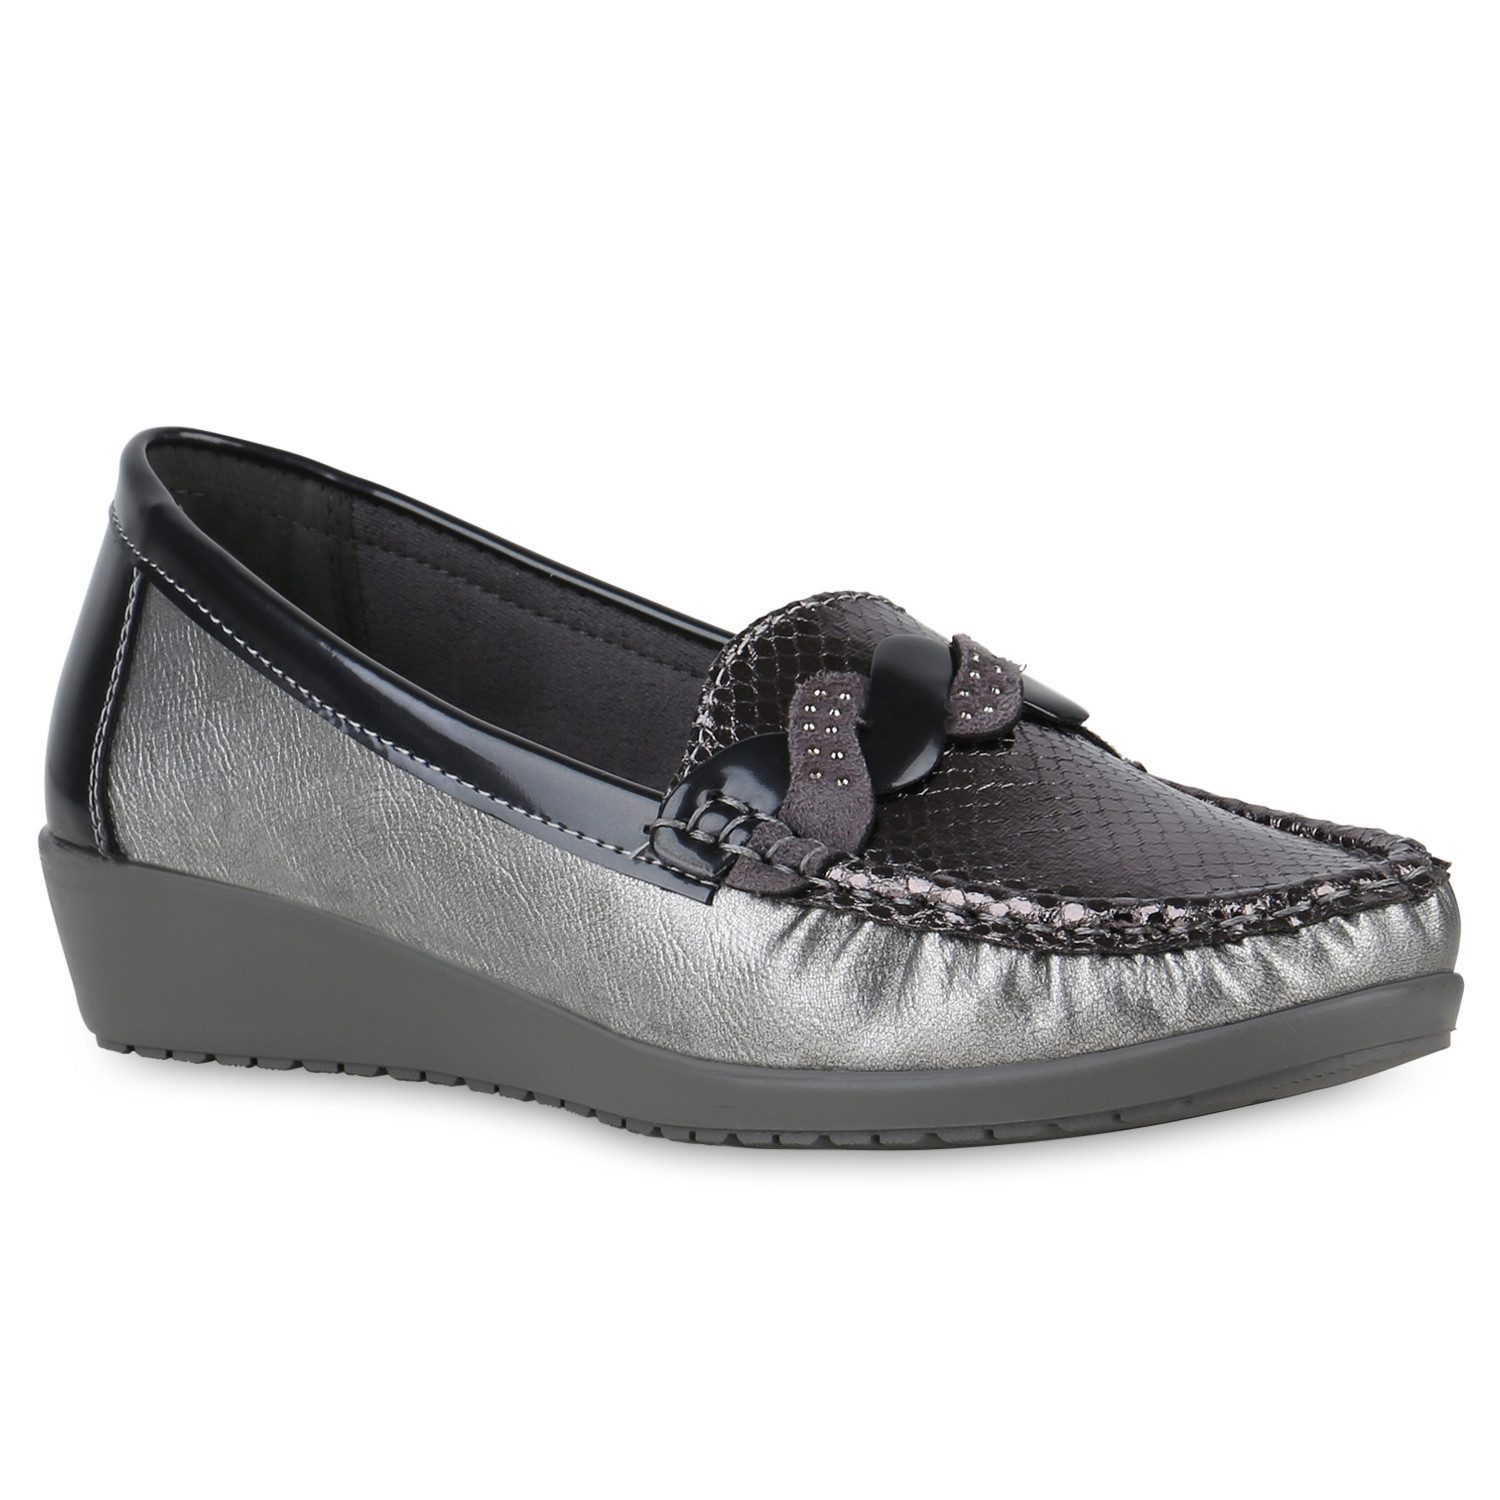 VAN HILL 841250 MO LP768-2 Damen Slippers Sneaker Schuhe